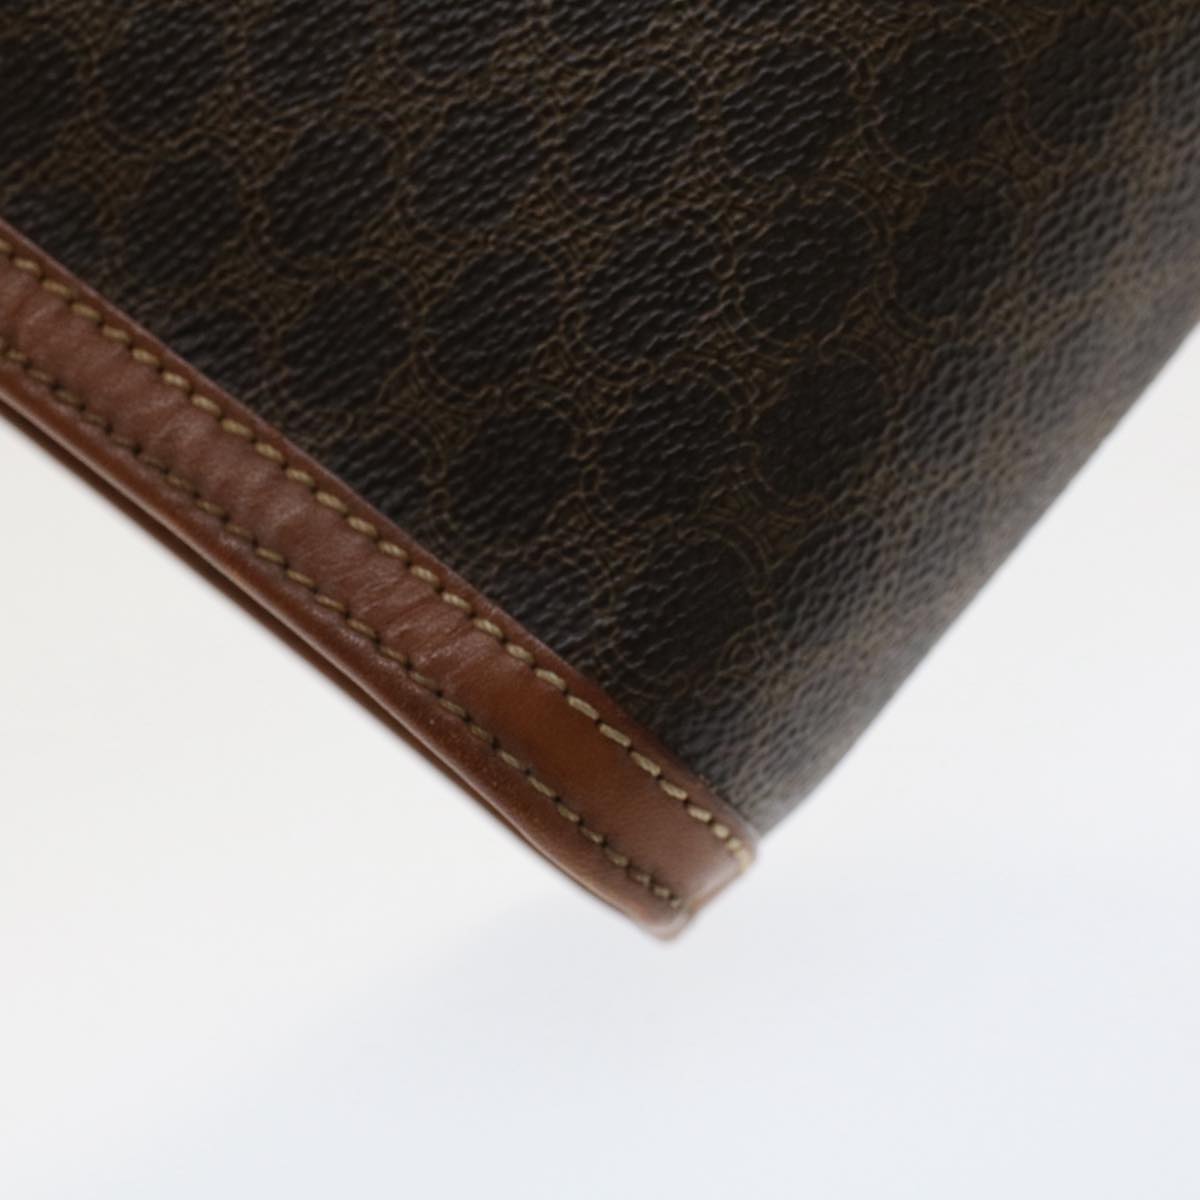 CELINE Macadam Canvas Clutch Bag PVC Leather Brown Auth fm2642